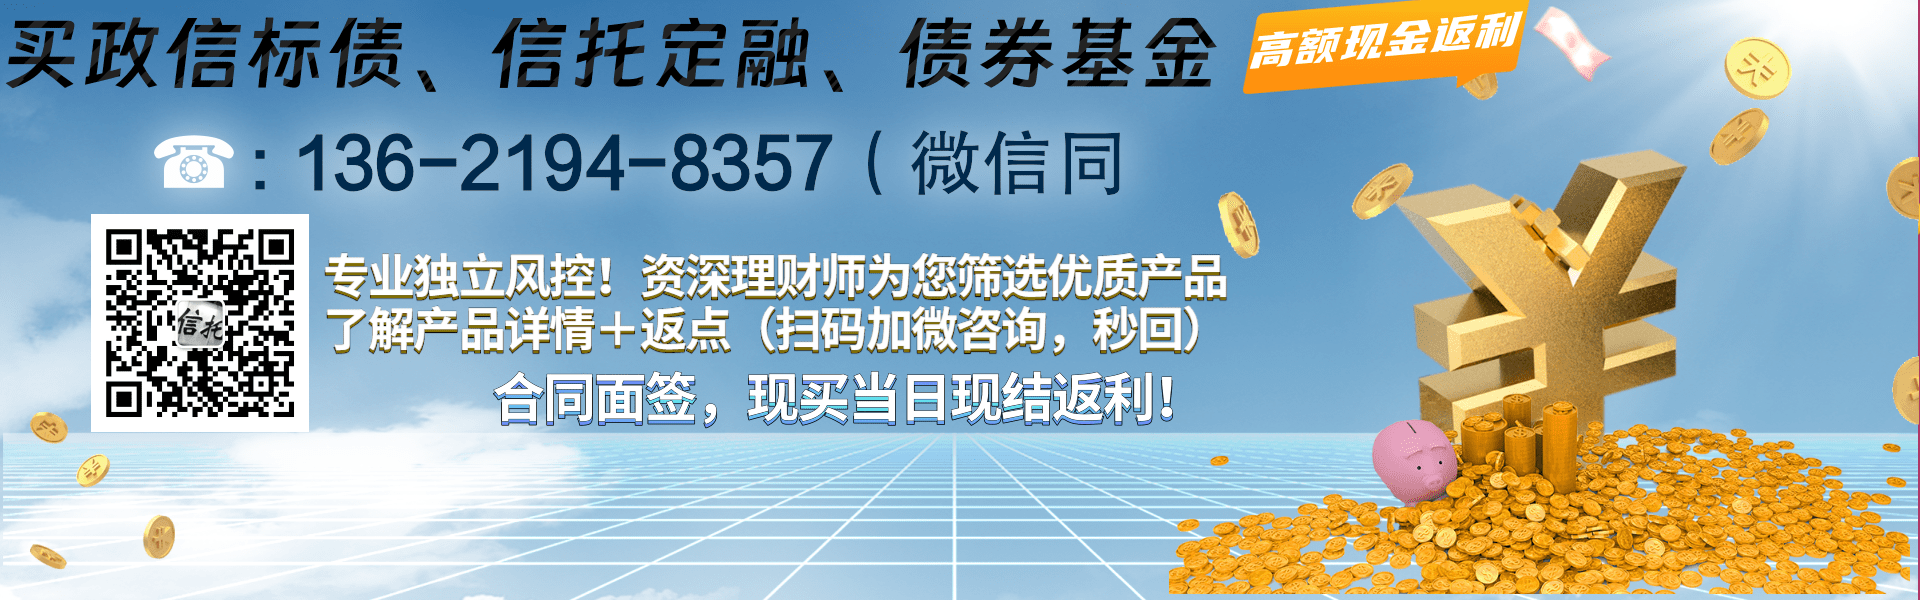 丽江市城乡建设投资运营2021年债权资产项目